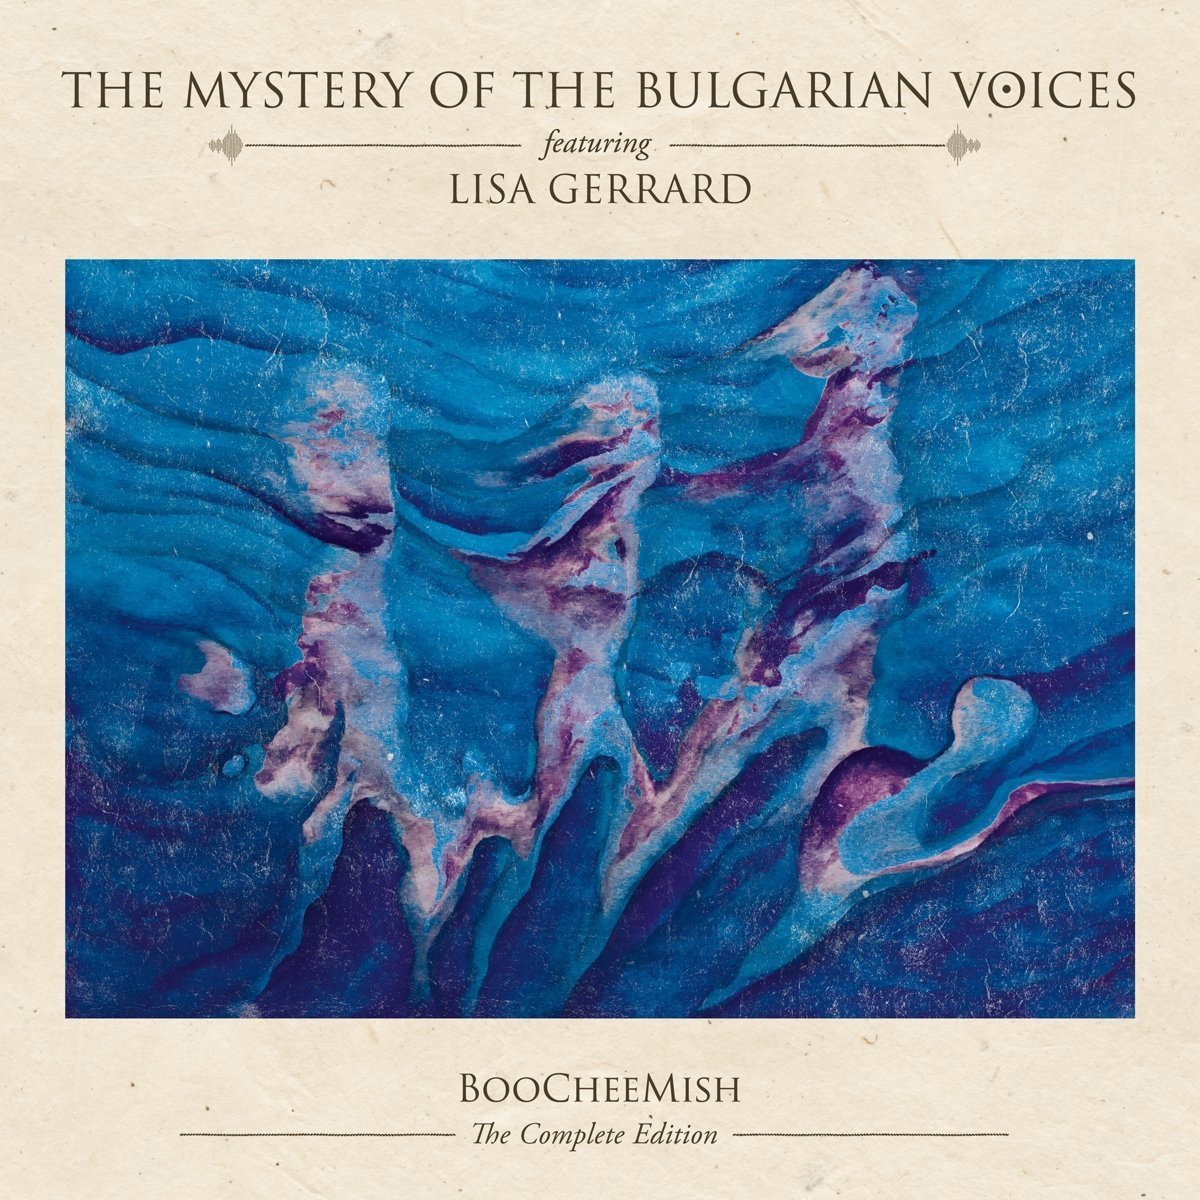 Vinile Mystery Of Bulgarian Voices Featuring Lisa Gerrard - Boocheemish (Complete Edition) (2 Cd+Sacd+Lp) NUOVO SIGILLATO, EDIZIONE DEL 14/05/2018 SUBITO DISPONIBILE